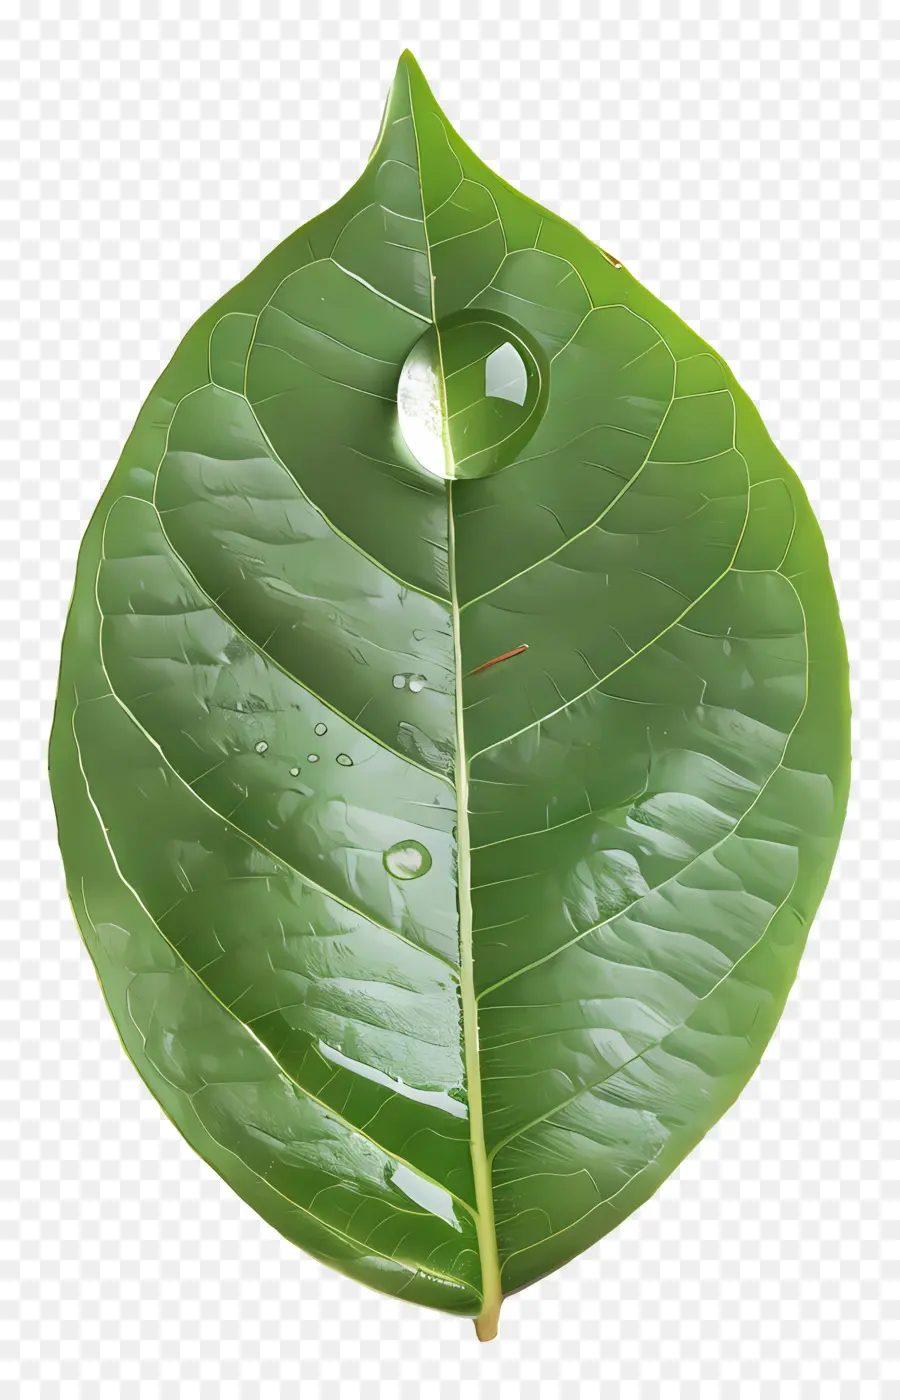 grünes Blatt - Grünes Blatt mit Wassertropfen, dunkler Hintergrund